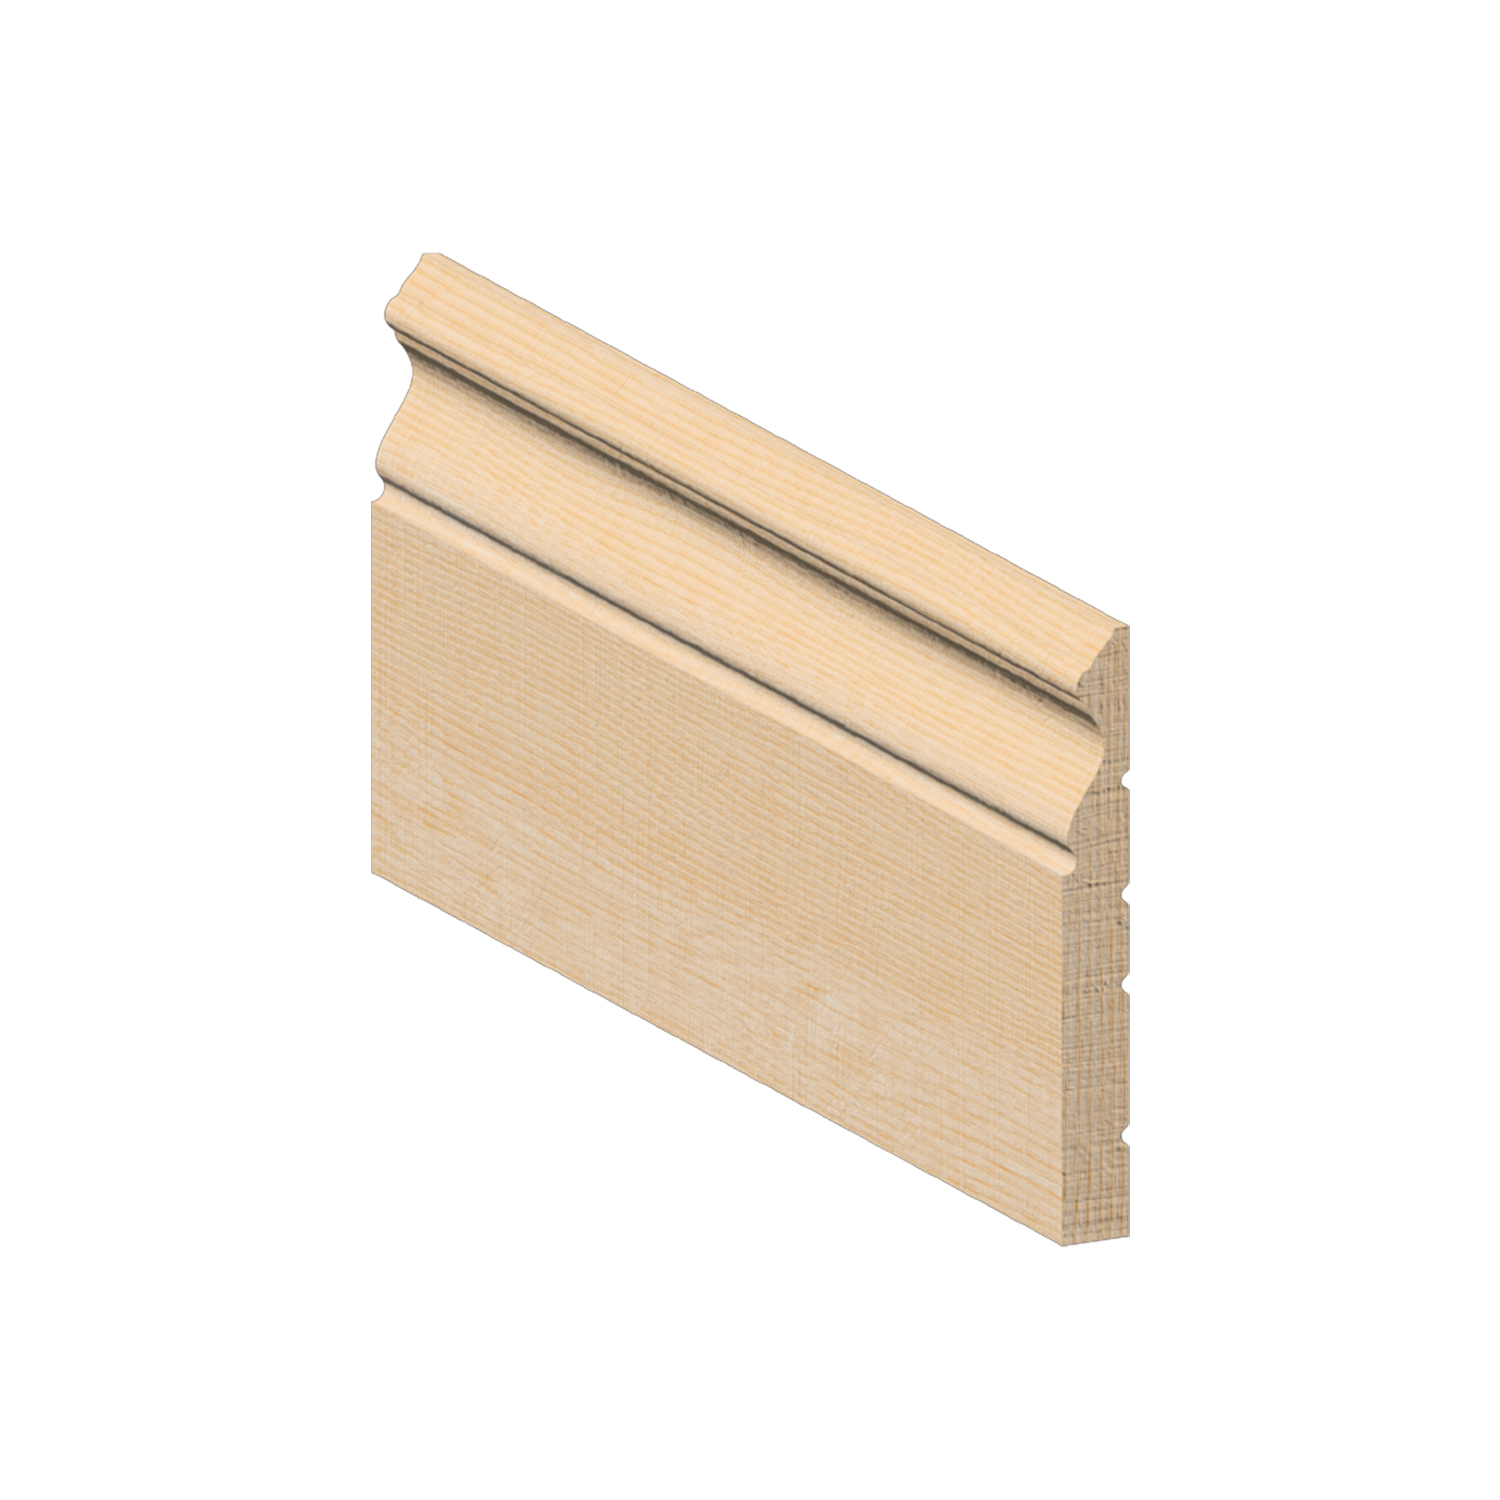 Base Board Oak Colonial 4 x 1/2 - baseoak4-1/2 - baseboard - SOLD BY FEET